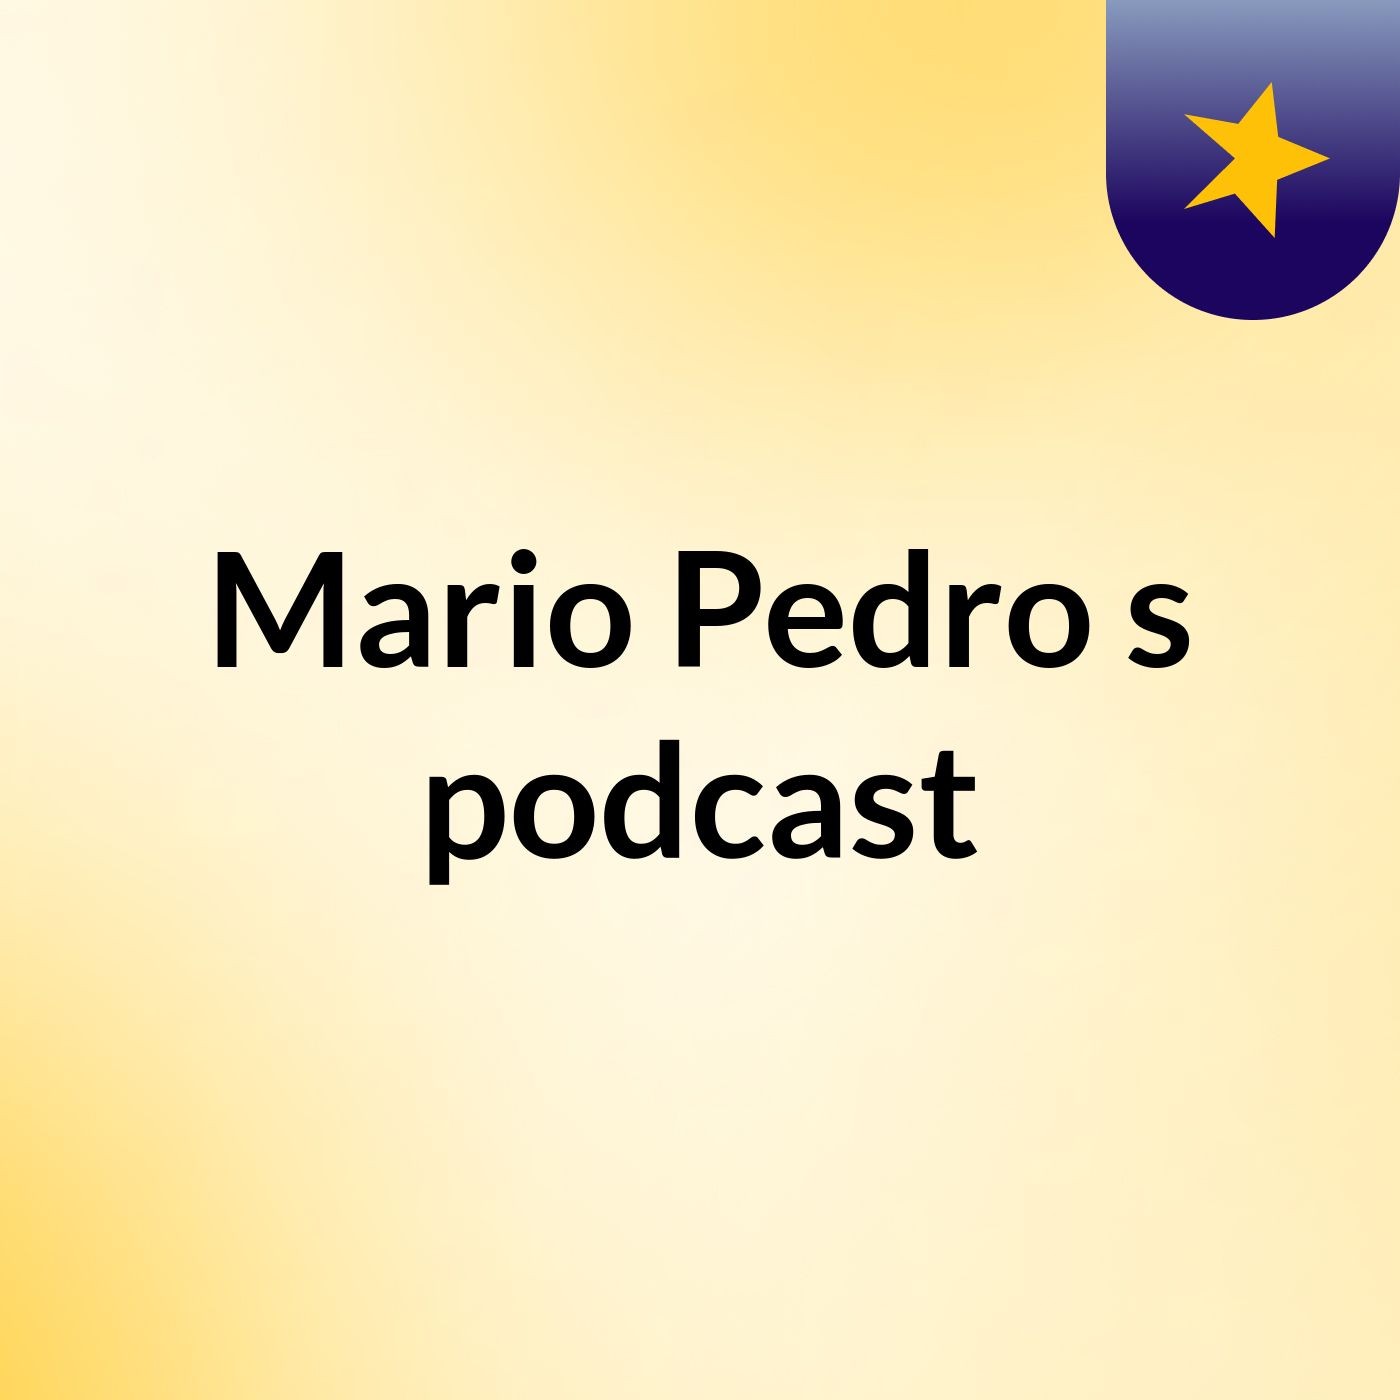 Mario Pedro's podcast